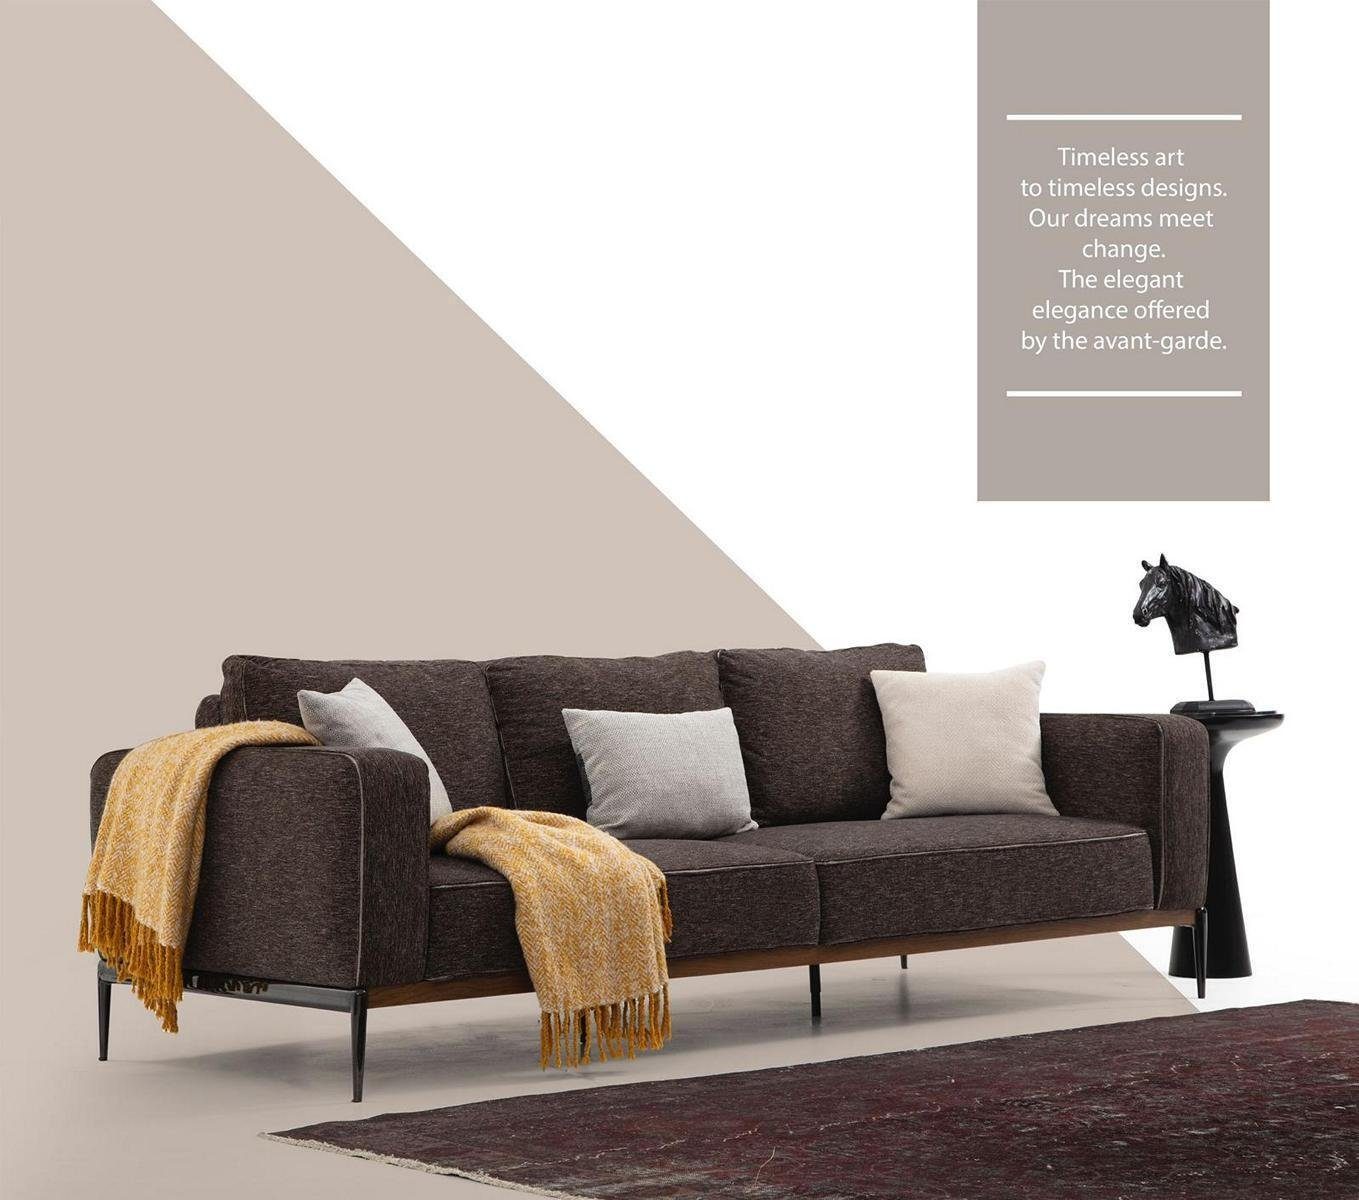 JVmoebel 4-Sitzer Viersitzer Sofa 4 Sitzer Stoff Sofas Modern Design Wohnzimmer Grau, 1 Teile, Made in Europa | Einzelsofas